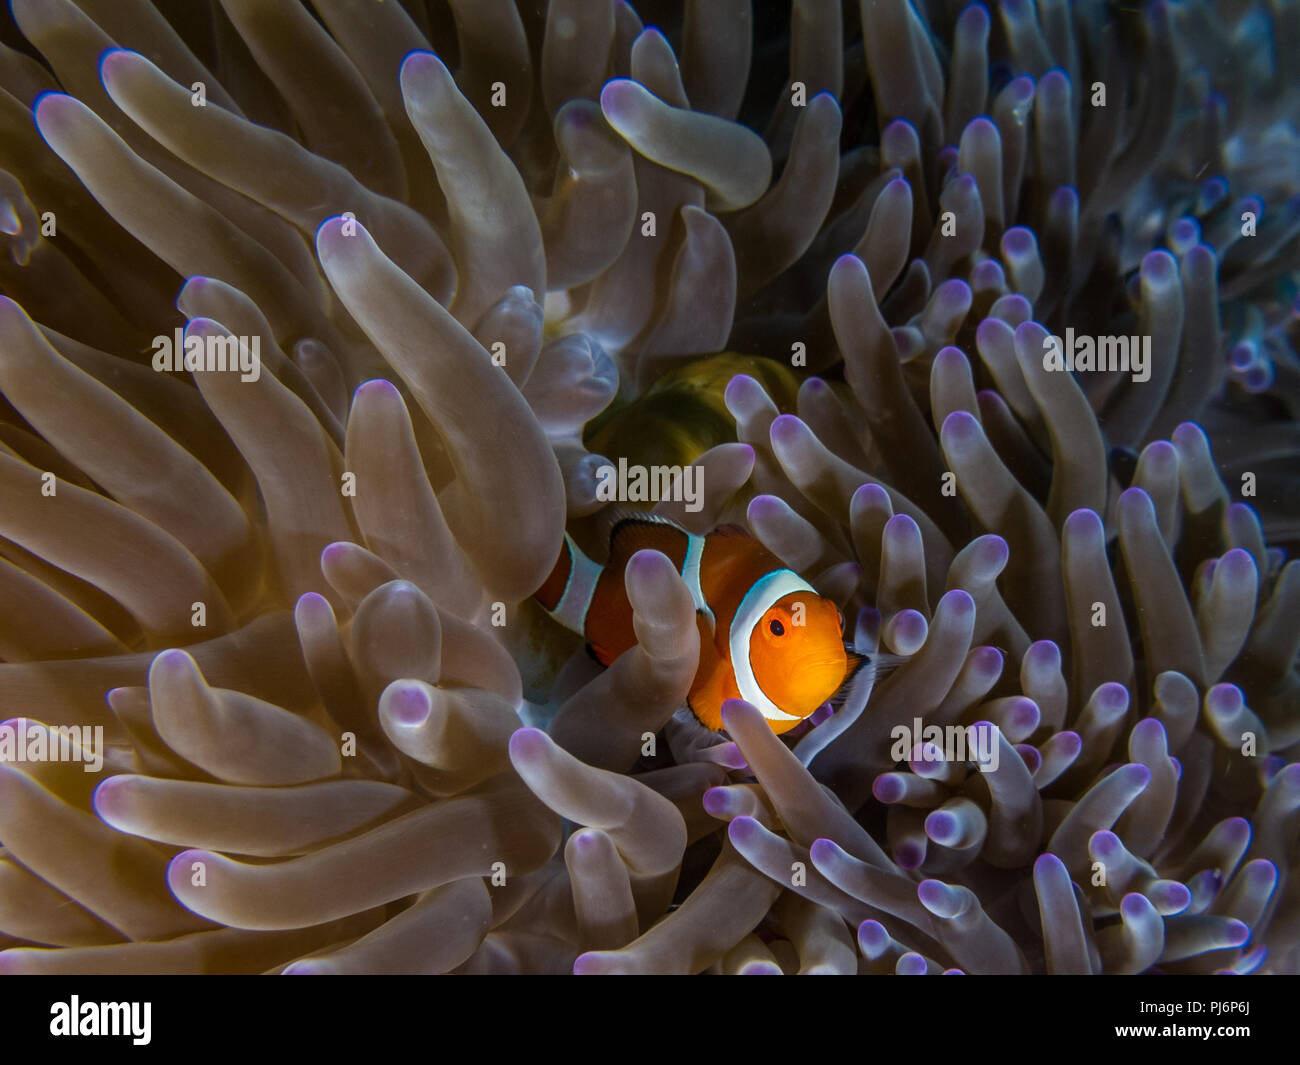 Clown anemonefish, Amphiprion ocellaris, Mabul, Sabah, Malaysia Stock Photo